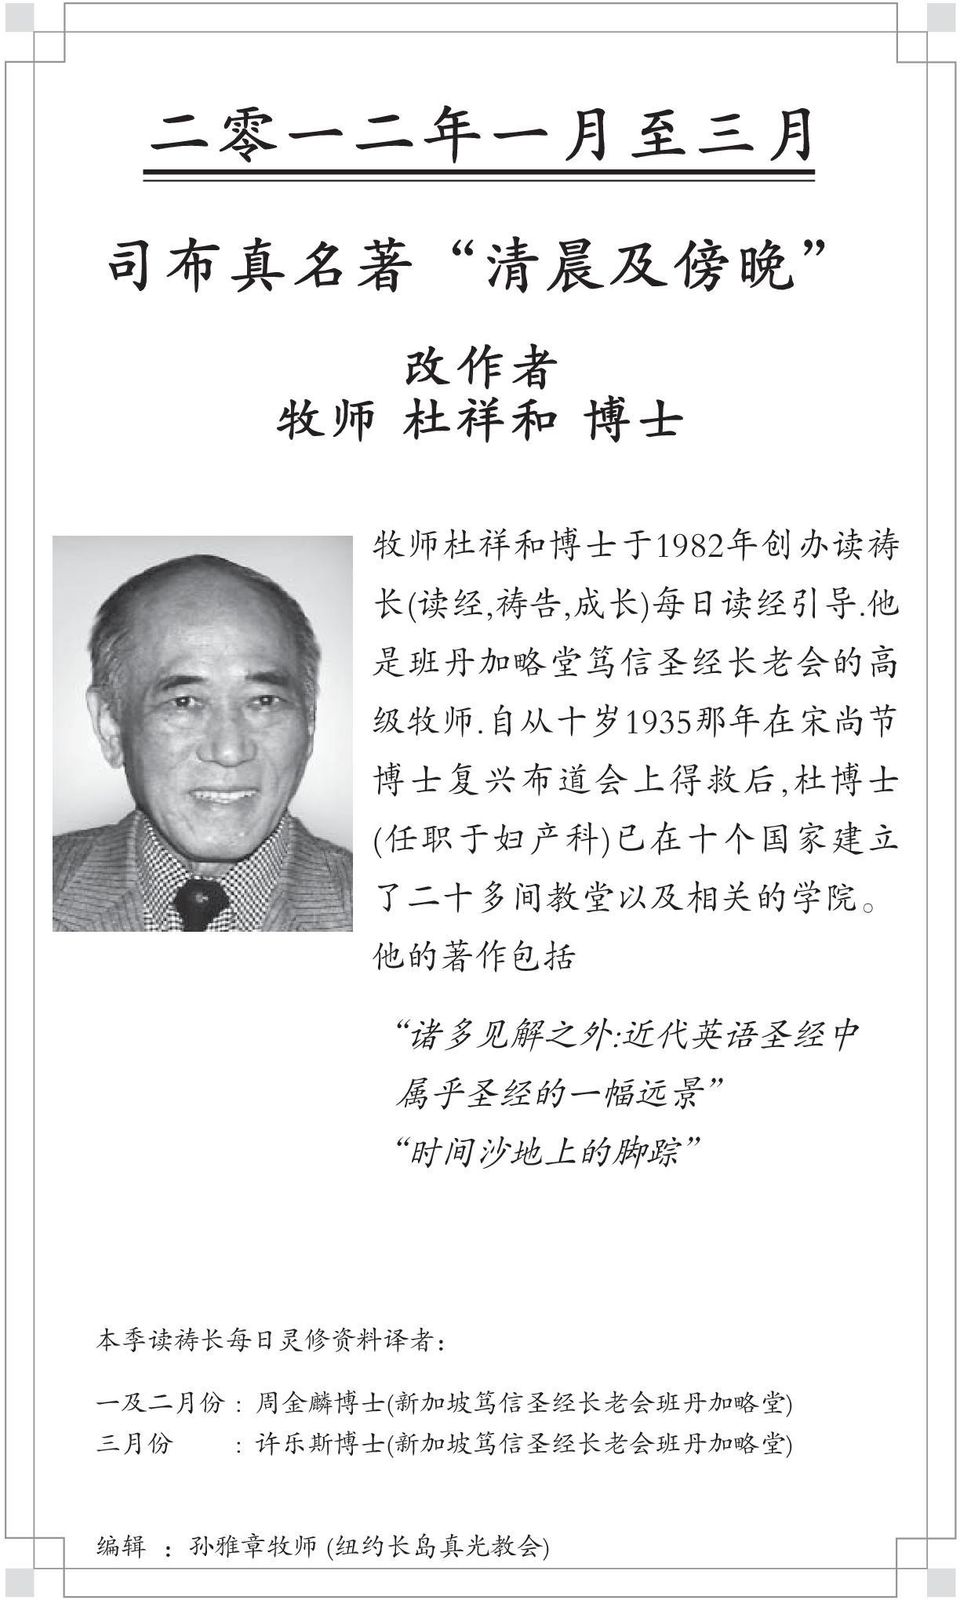 自 从 十 岁 1935 那 年 在 宋 尚 节 博 士 复 兴 布 道 会 上 得 救 后, 杜 博 士 ( 任 职 于 妇 产 科 ) 已 在 十 个 国 家 建 立 了 二 十 多 间 教 堂 以 及 相 关 的 学 院 他 的 著 作 包 括 诸 多